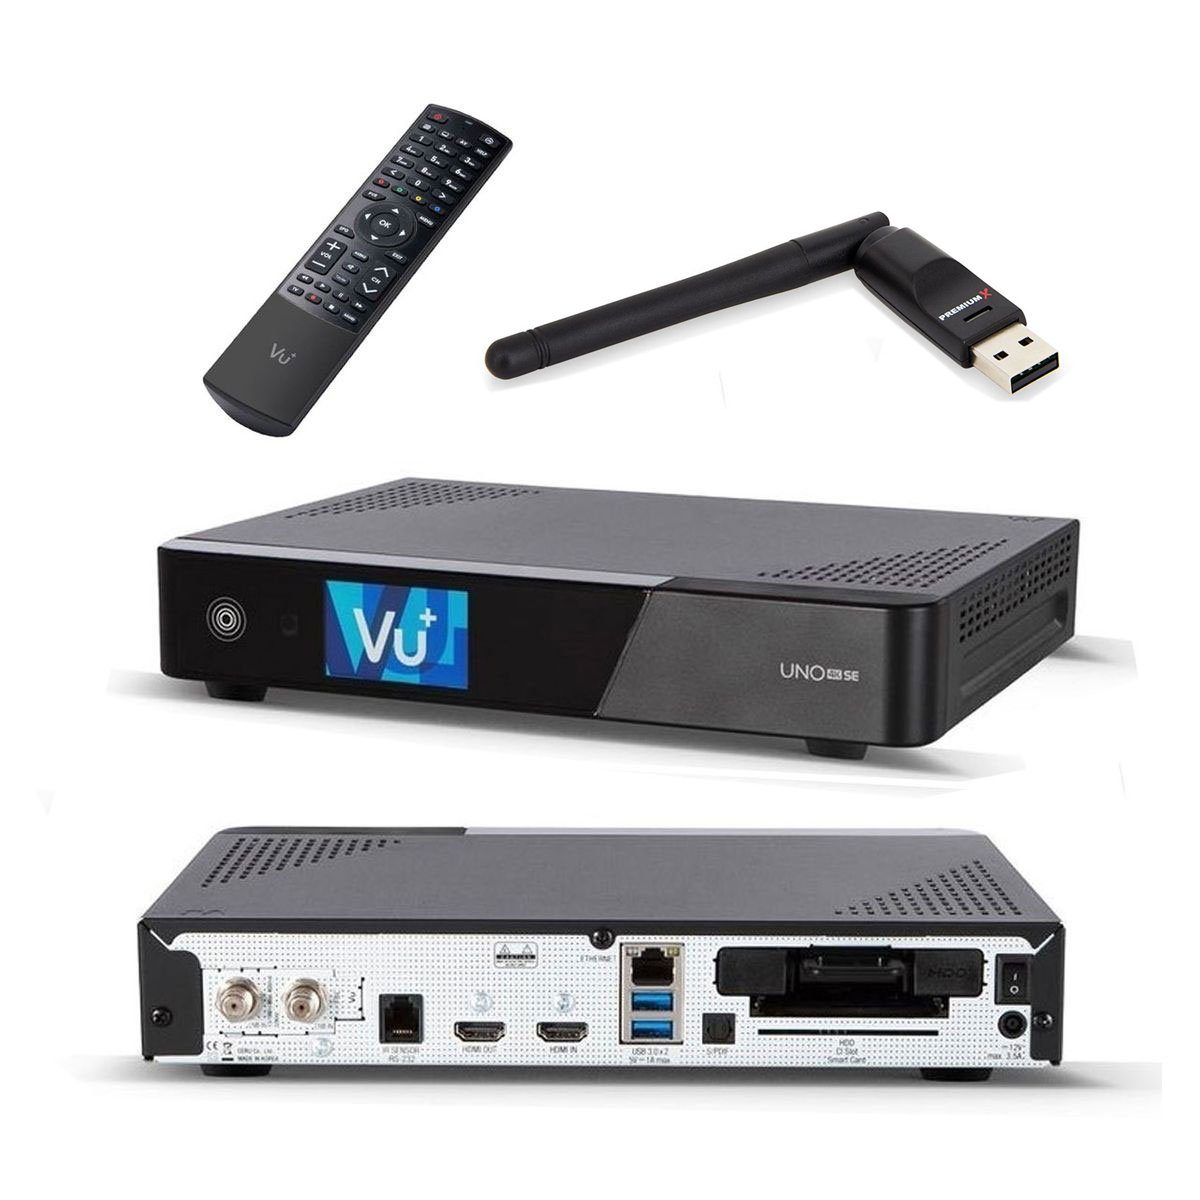 VU+ »Uno 4K SE 1x DVB-S2 FBC Sat Receiver Twin Tuner PVR Ready Linux  Satellitenreceiver UHD TV Receiver Satelliten-Fernsehen mit Wlan-Stick« SAT- Receiver